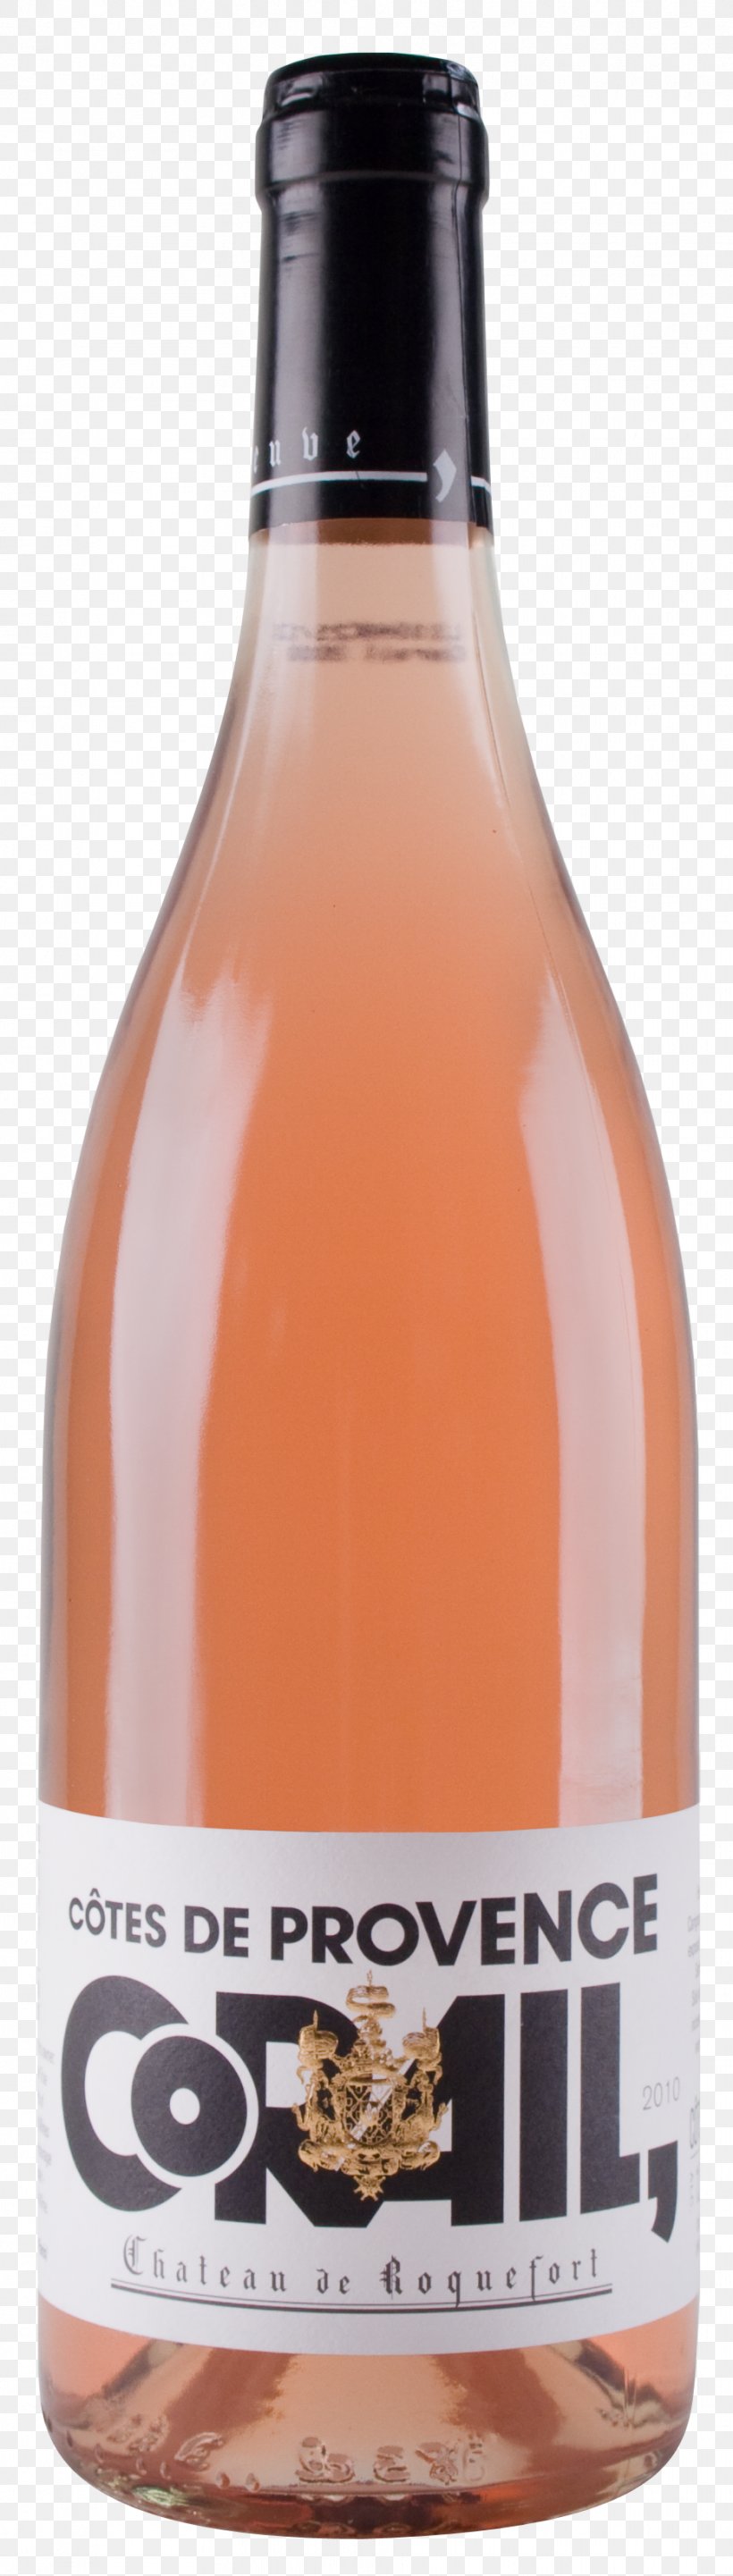 Liqueur Côtes-de-provence AOC Château De Roquefort Rosé, PNG, 932x3276px, Liqueur, Alcoholic Beverage, Bottle, Distilled Beverage, Drink Download Free